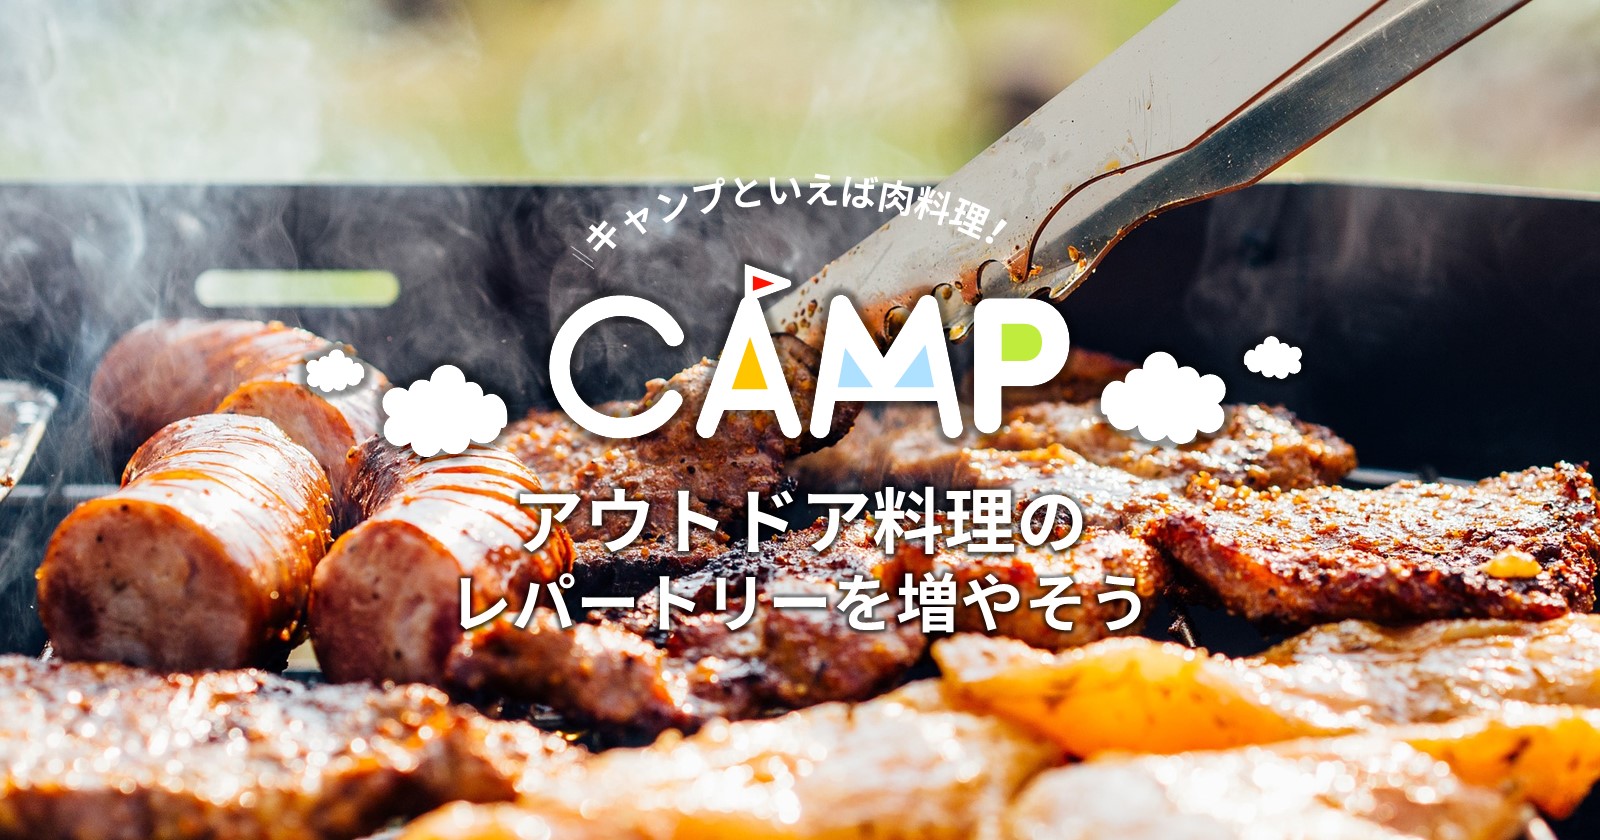 キャンプといえば肉料理 アウトドア料理のレパートリーを増やそう Takibi タキビ キャンプ グランピングなどアウトドアの総合情報サイト